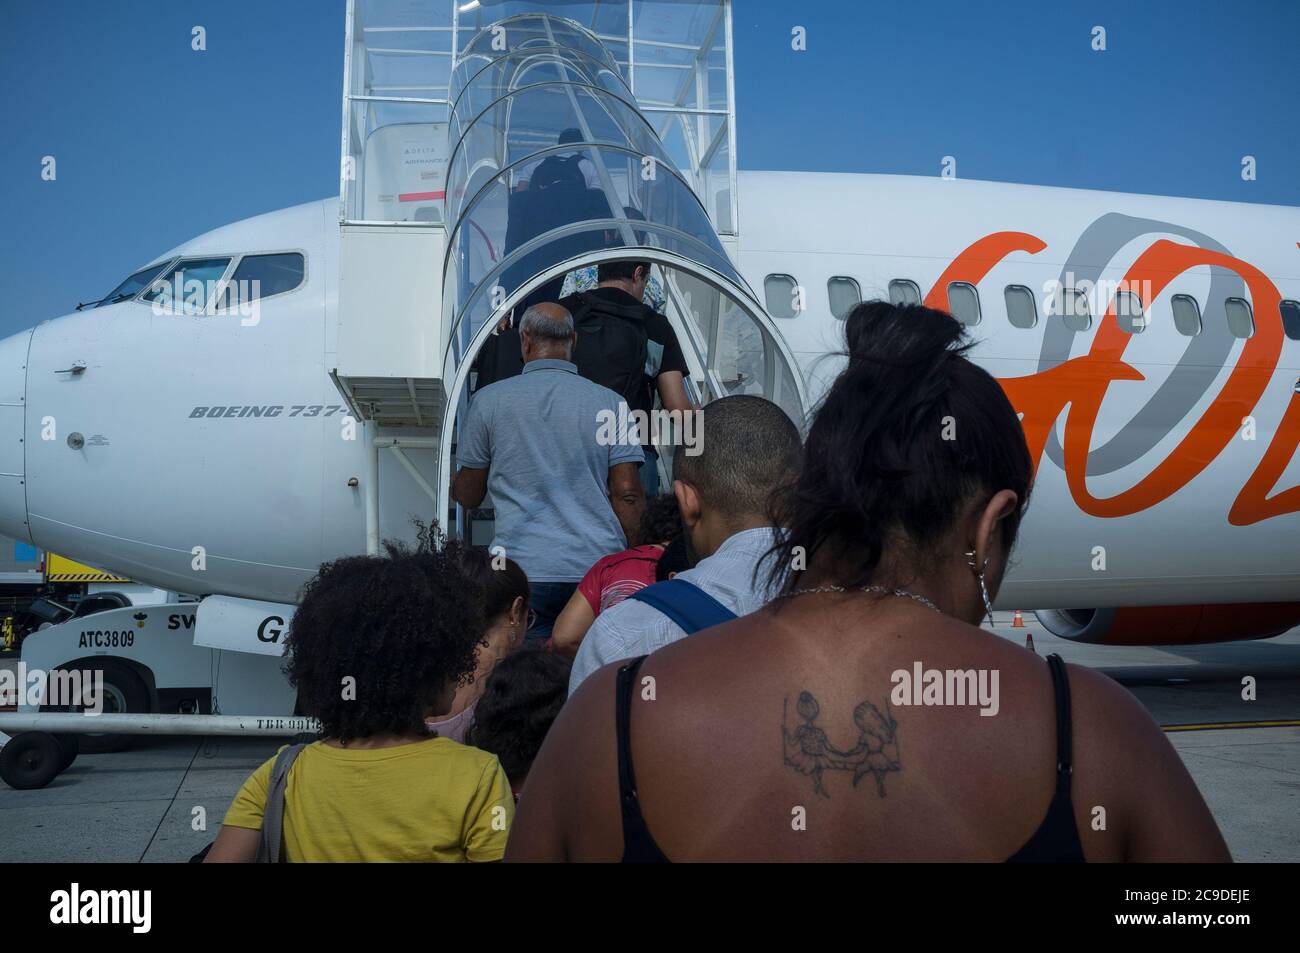 Scène de voyage, passagers à bord de l'avion, compagnie aérienne Gol, Rio de Janeiro, Brésil. Banque D'Images